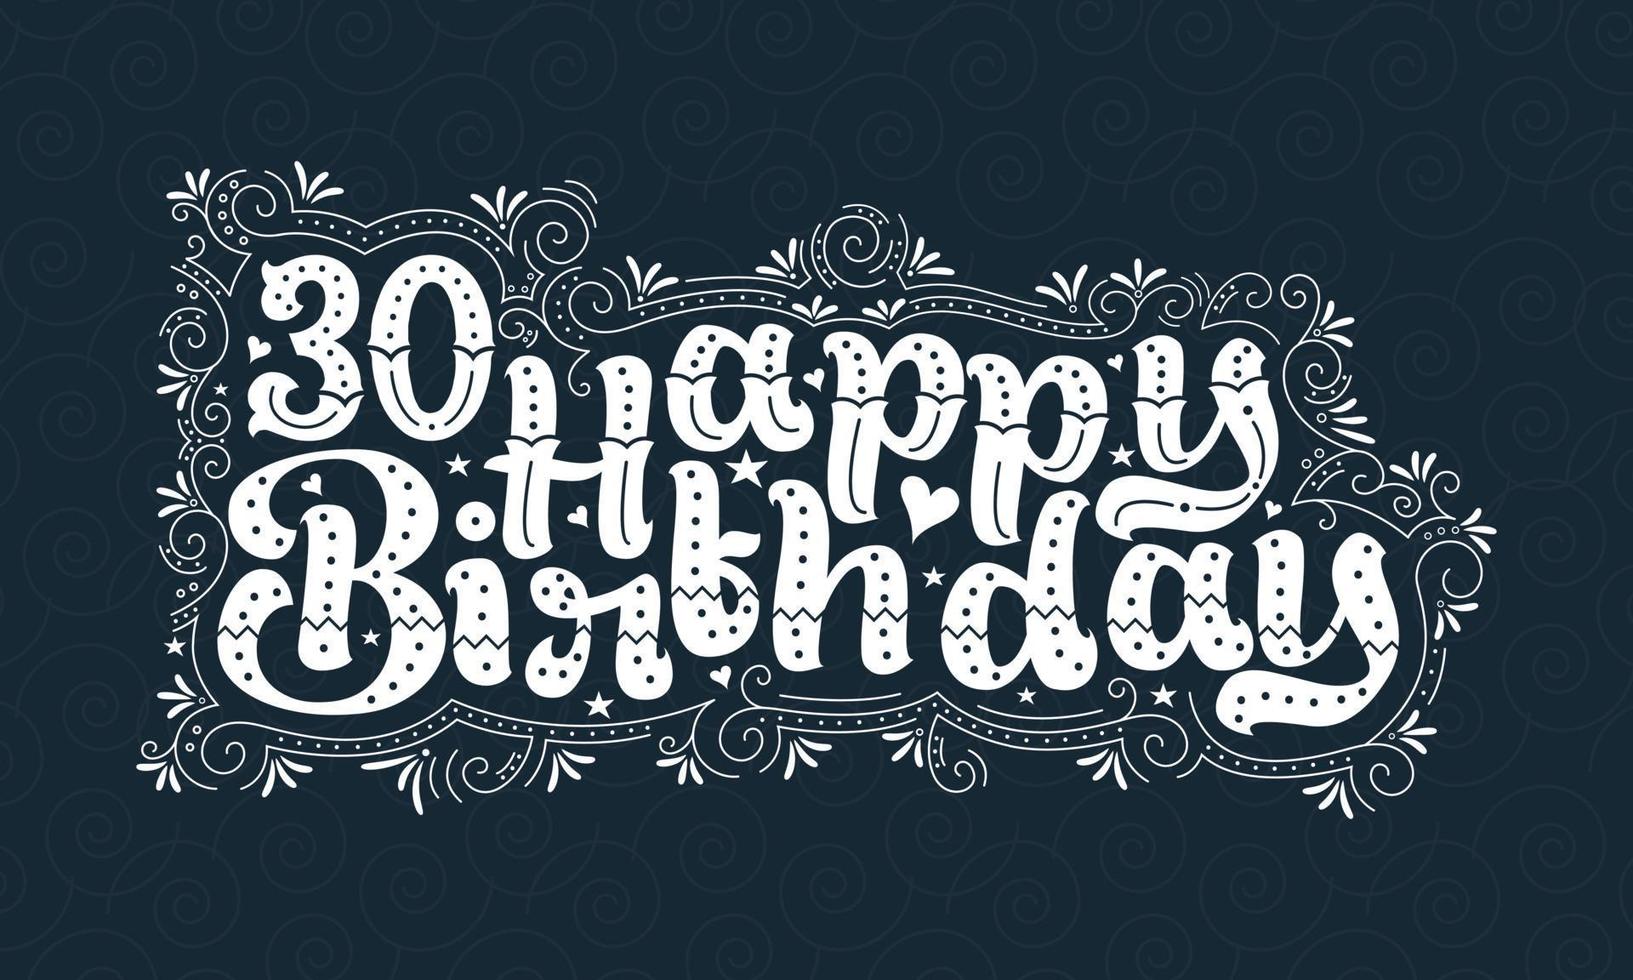 30e gelukkige verjaardag belettering, 30 jaar verjaardag mooi typografieontwerp met stippen, lijnen en bladeren. vector